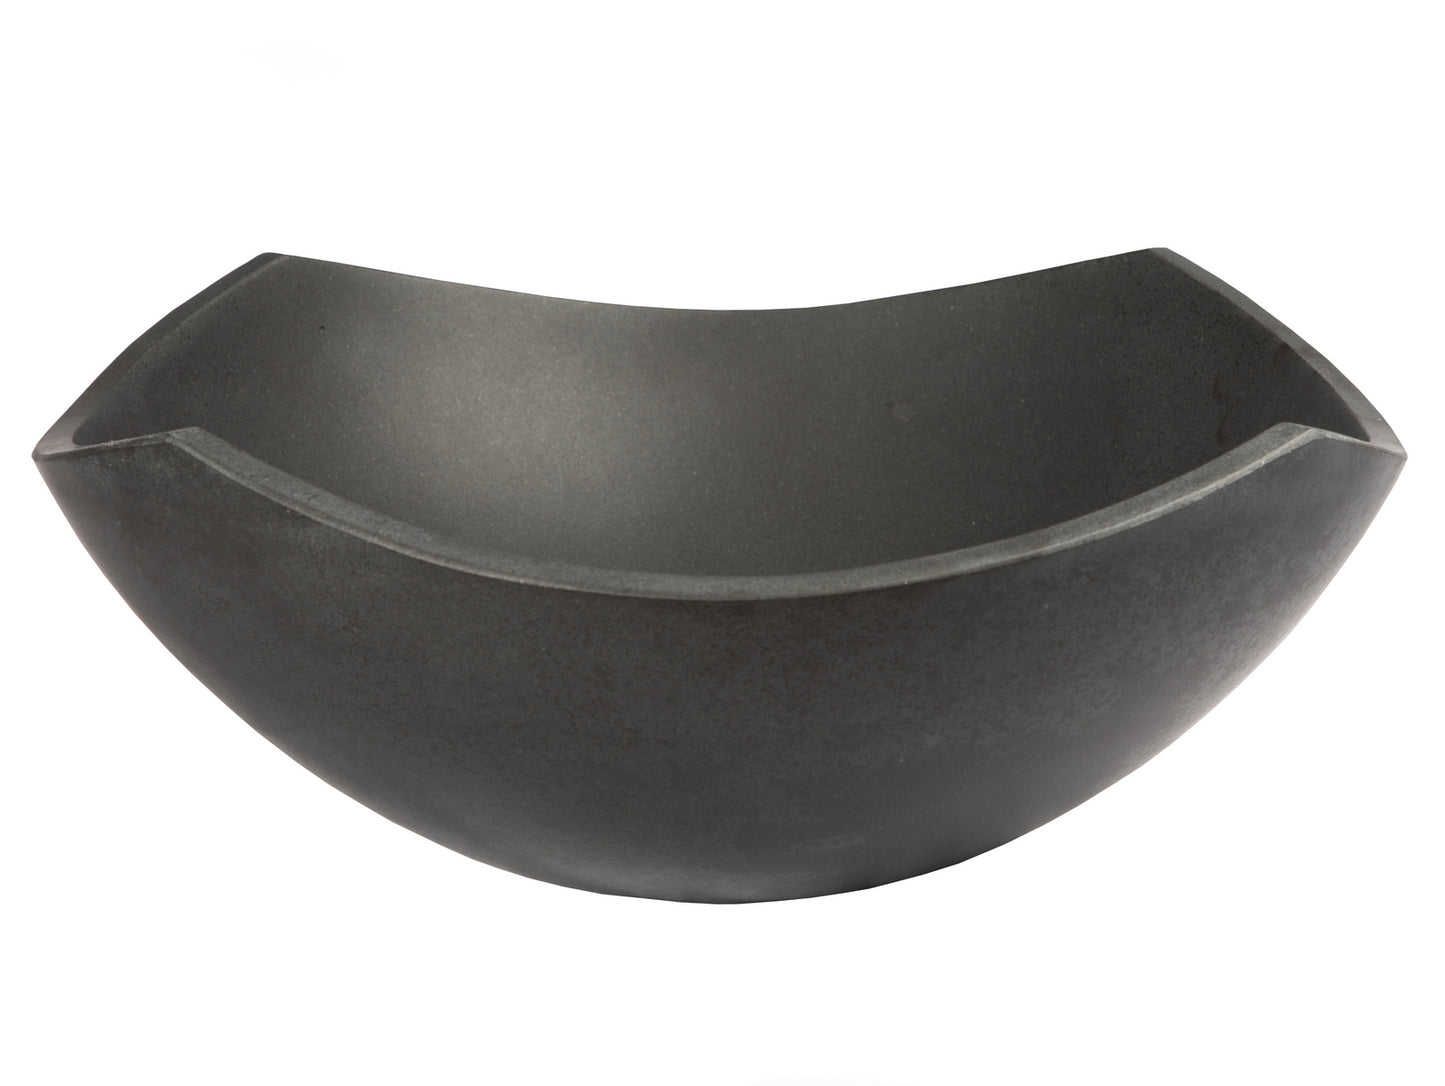 Arched Edges Bowl Sink - Black Lava Stone